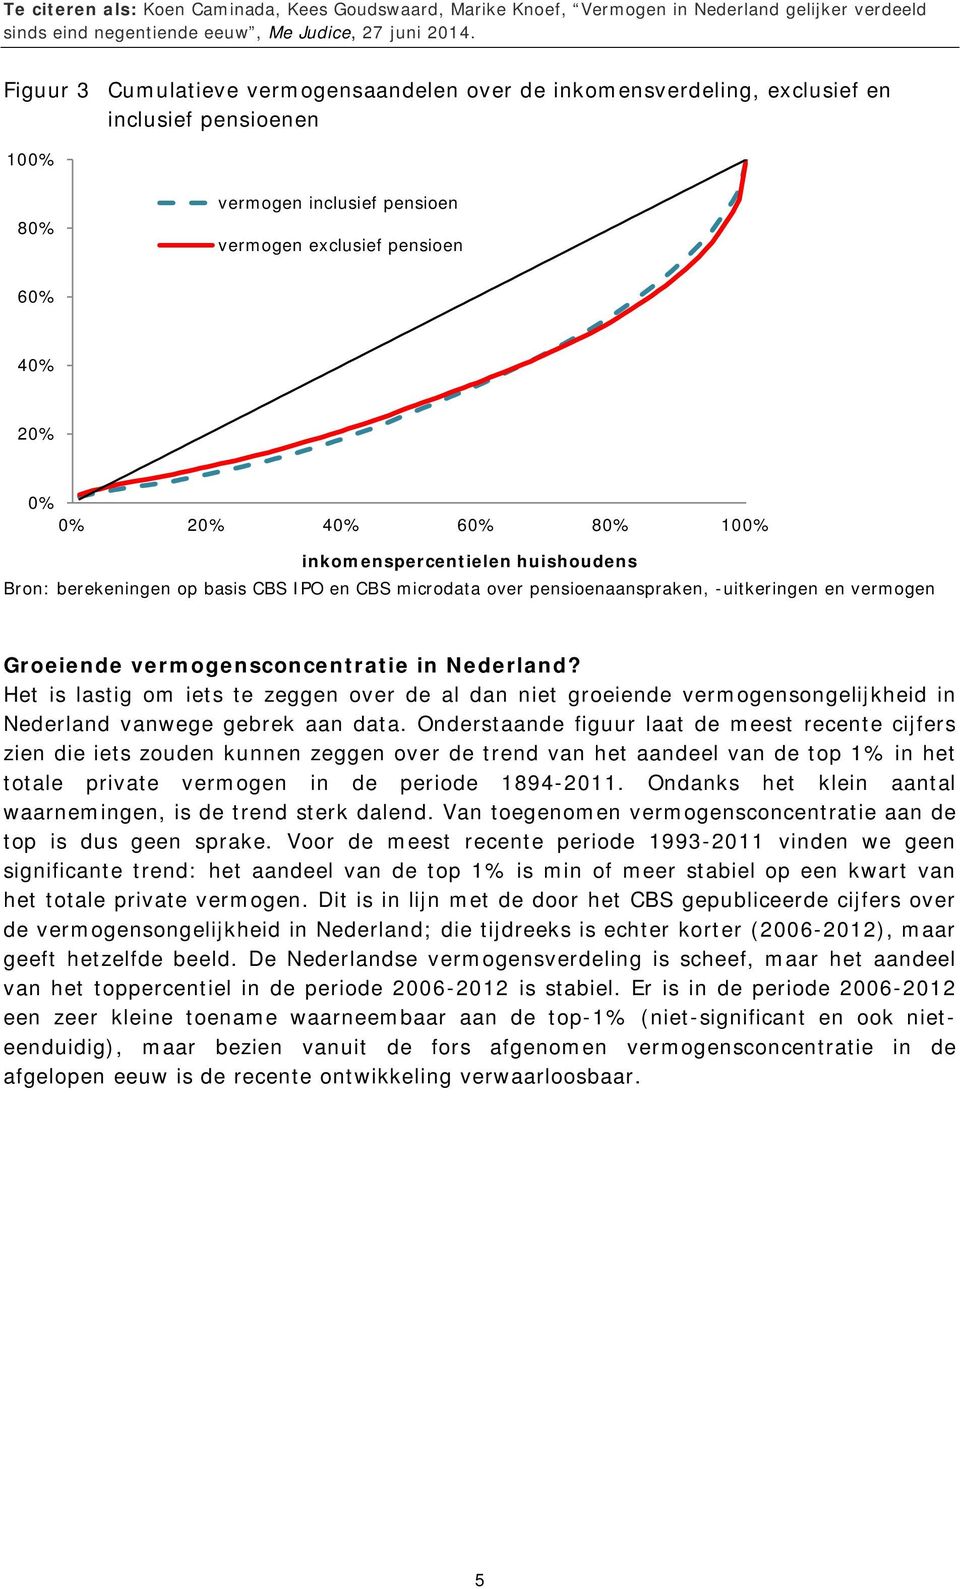 Het is lastig om iets te zeggen over de al dan niet groeiende vermogensongelijkheid in Nederland vanwege gebrek aan data.